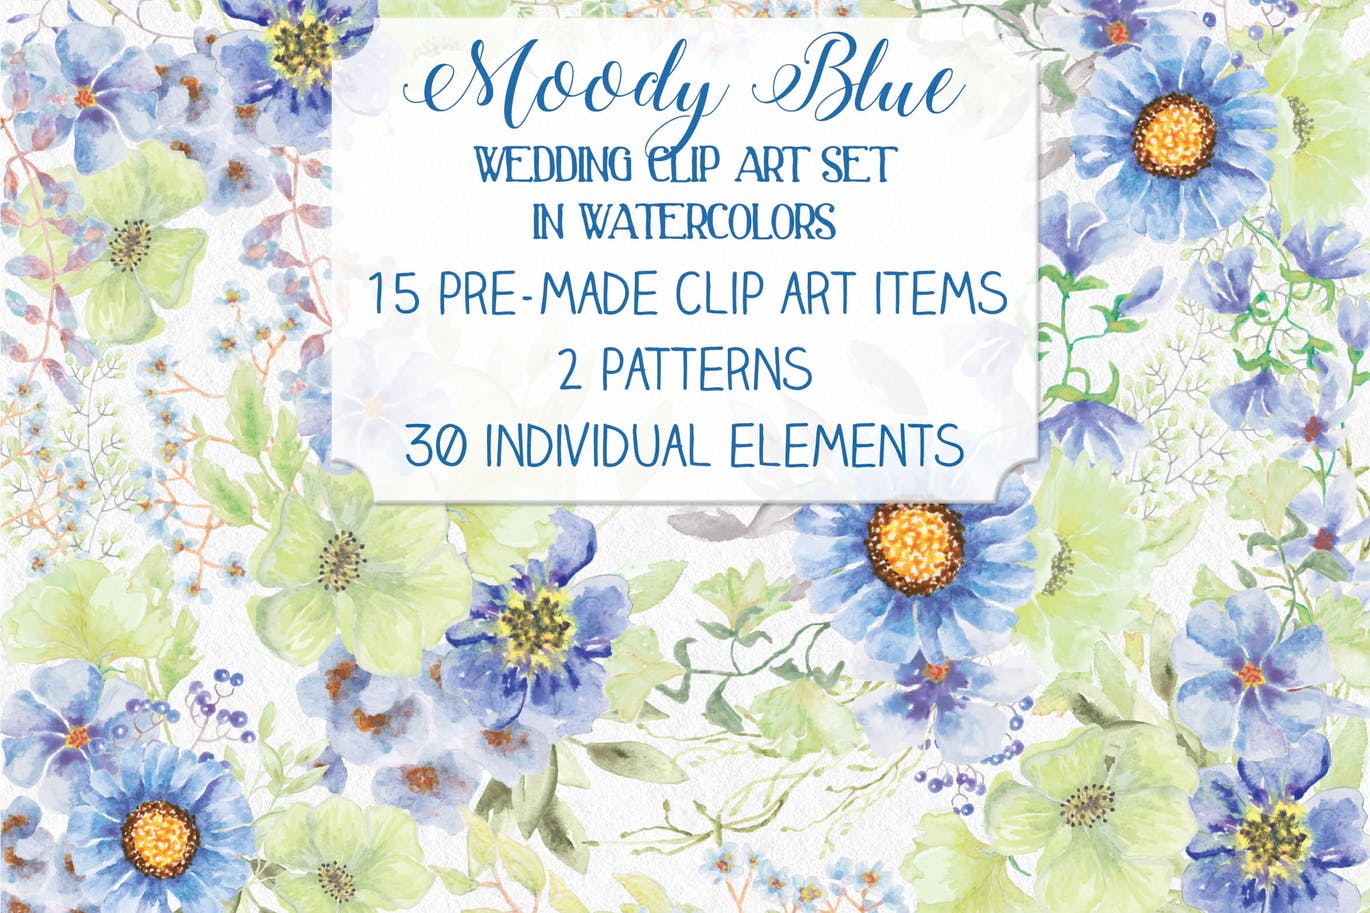 忧郁蓝水彩手绘花卉素材库精选设计素材 “Moody Blue” Watercolor Bundle插图